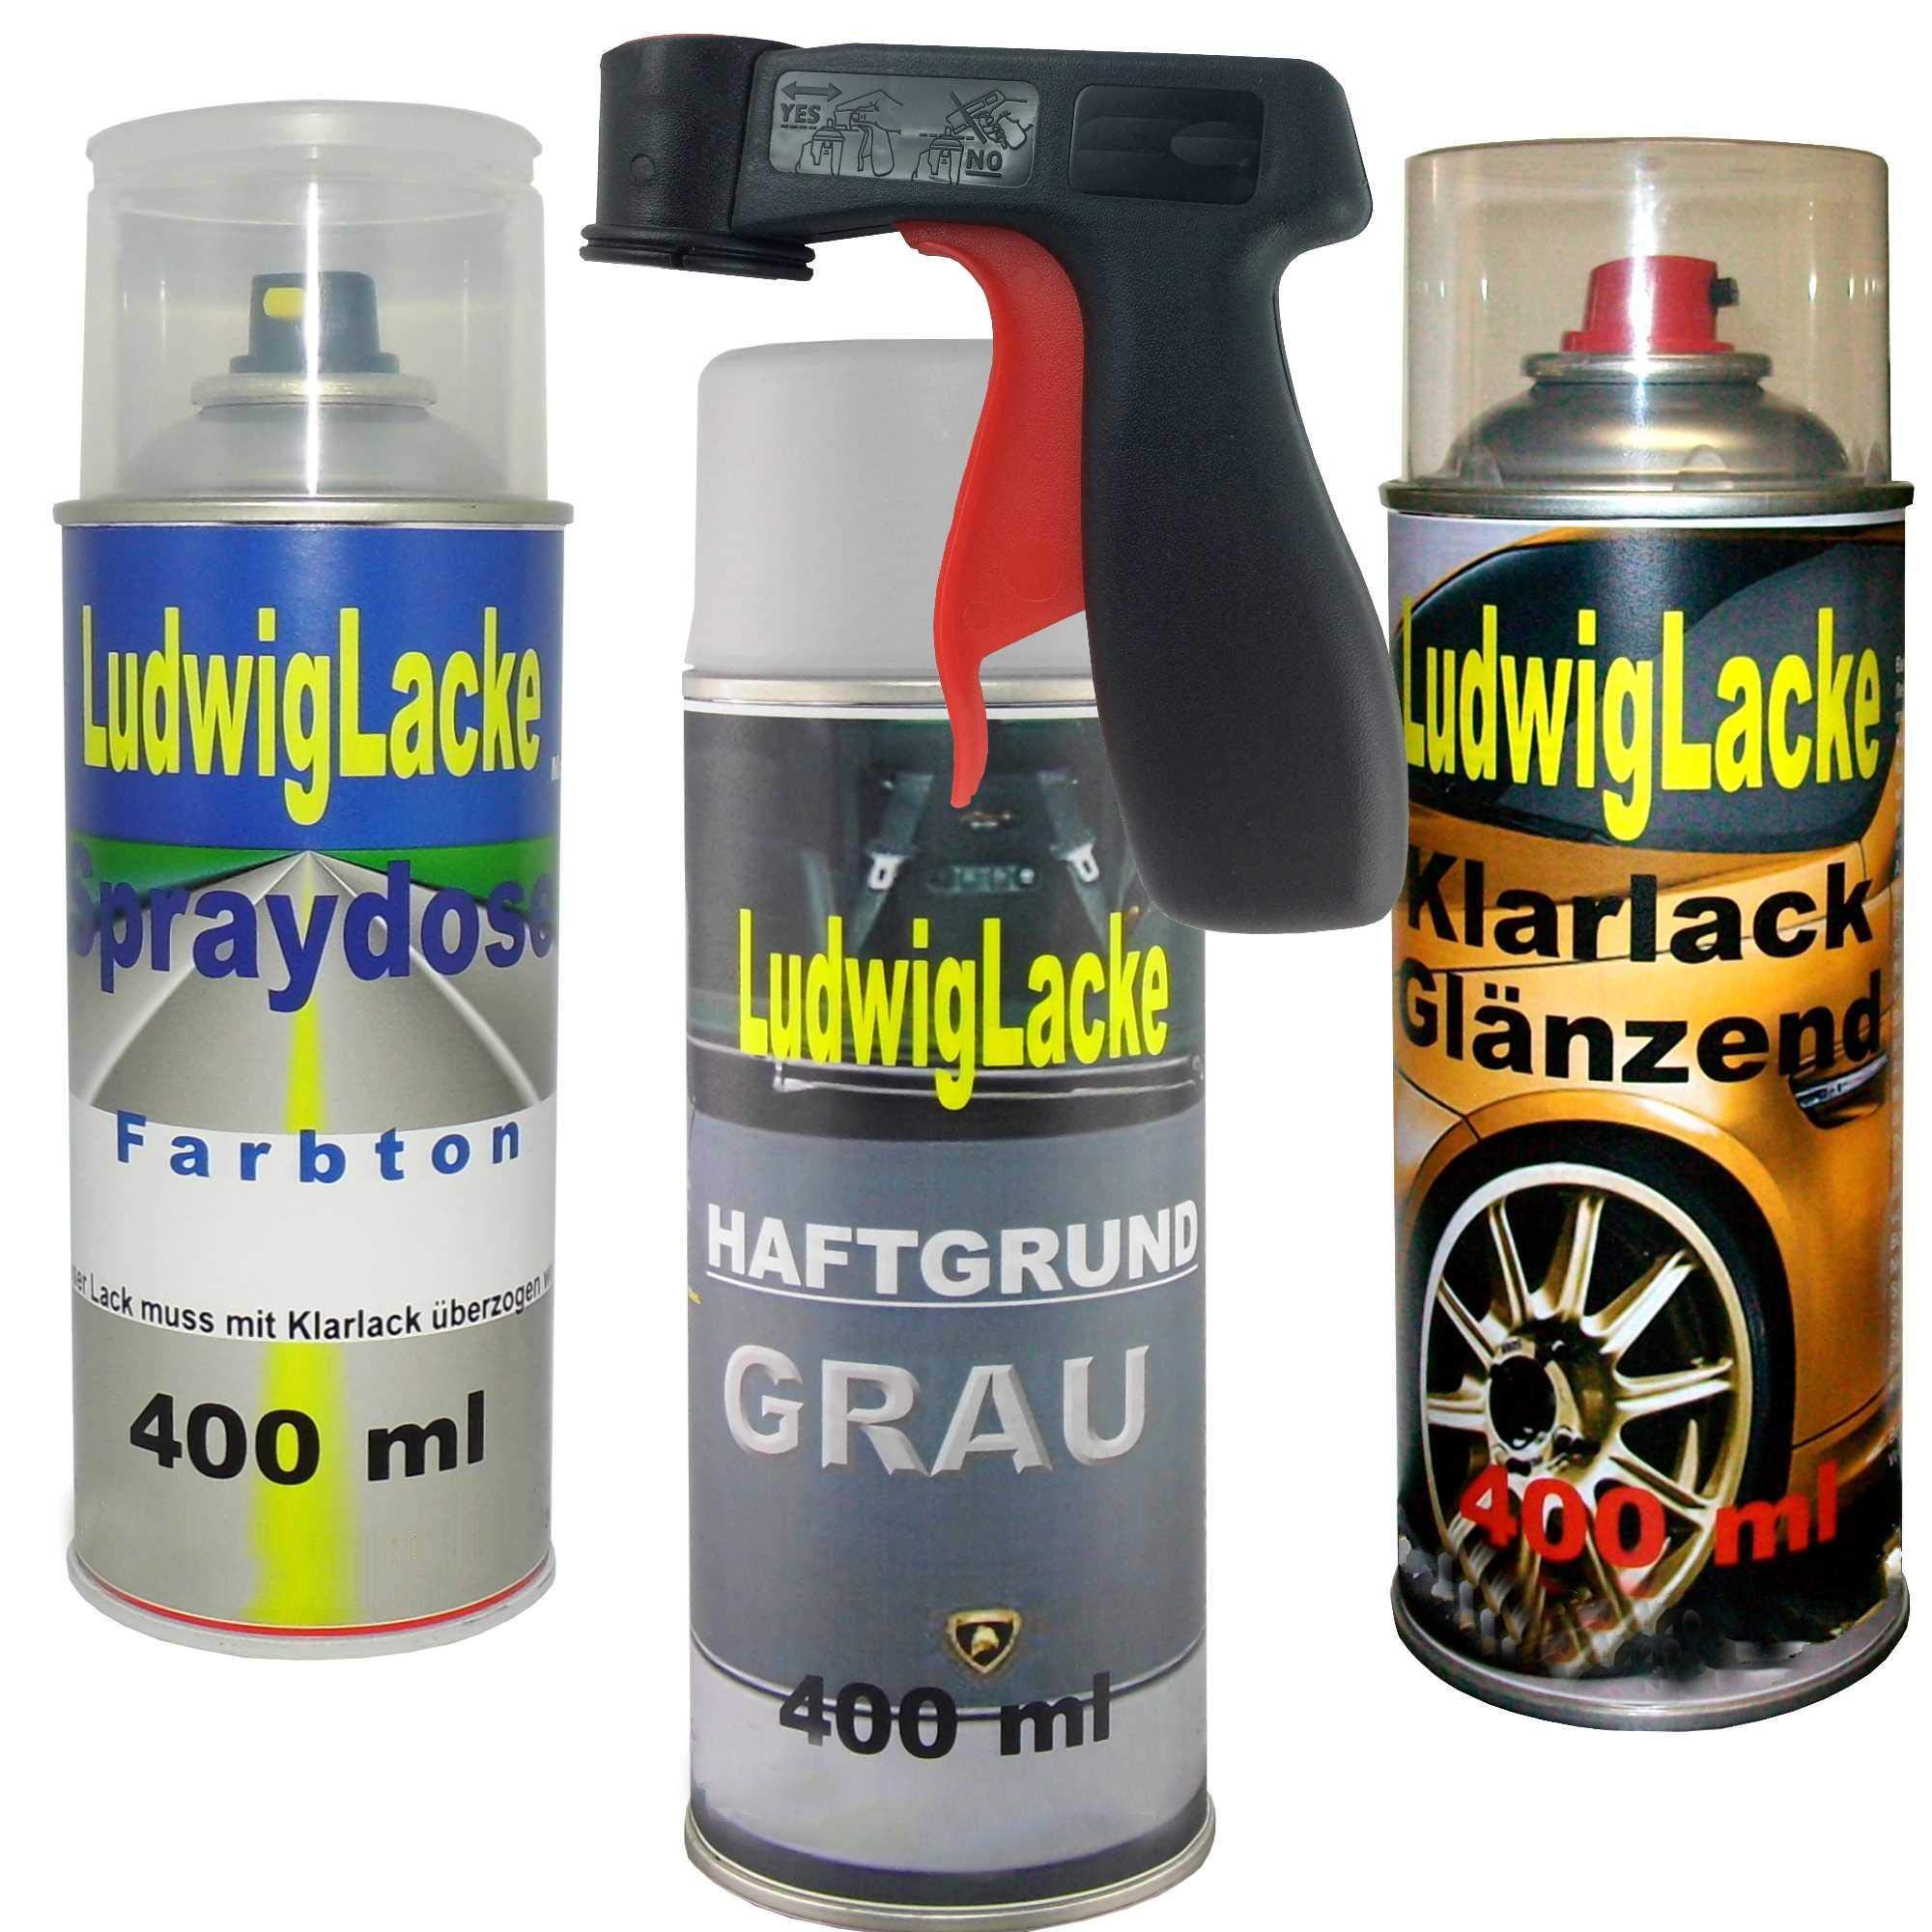 Ludwig Lacke 4 TLG. Lackierset Sprayset + Haftgrund grau + Haltegriff